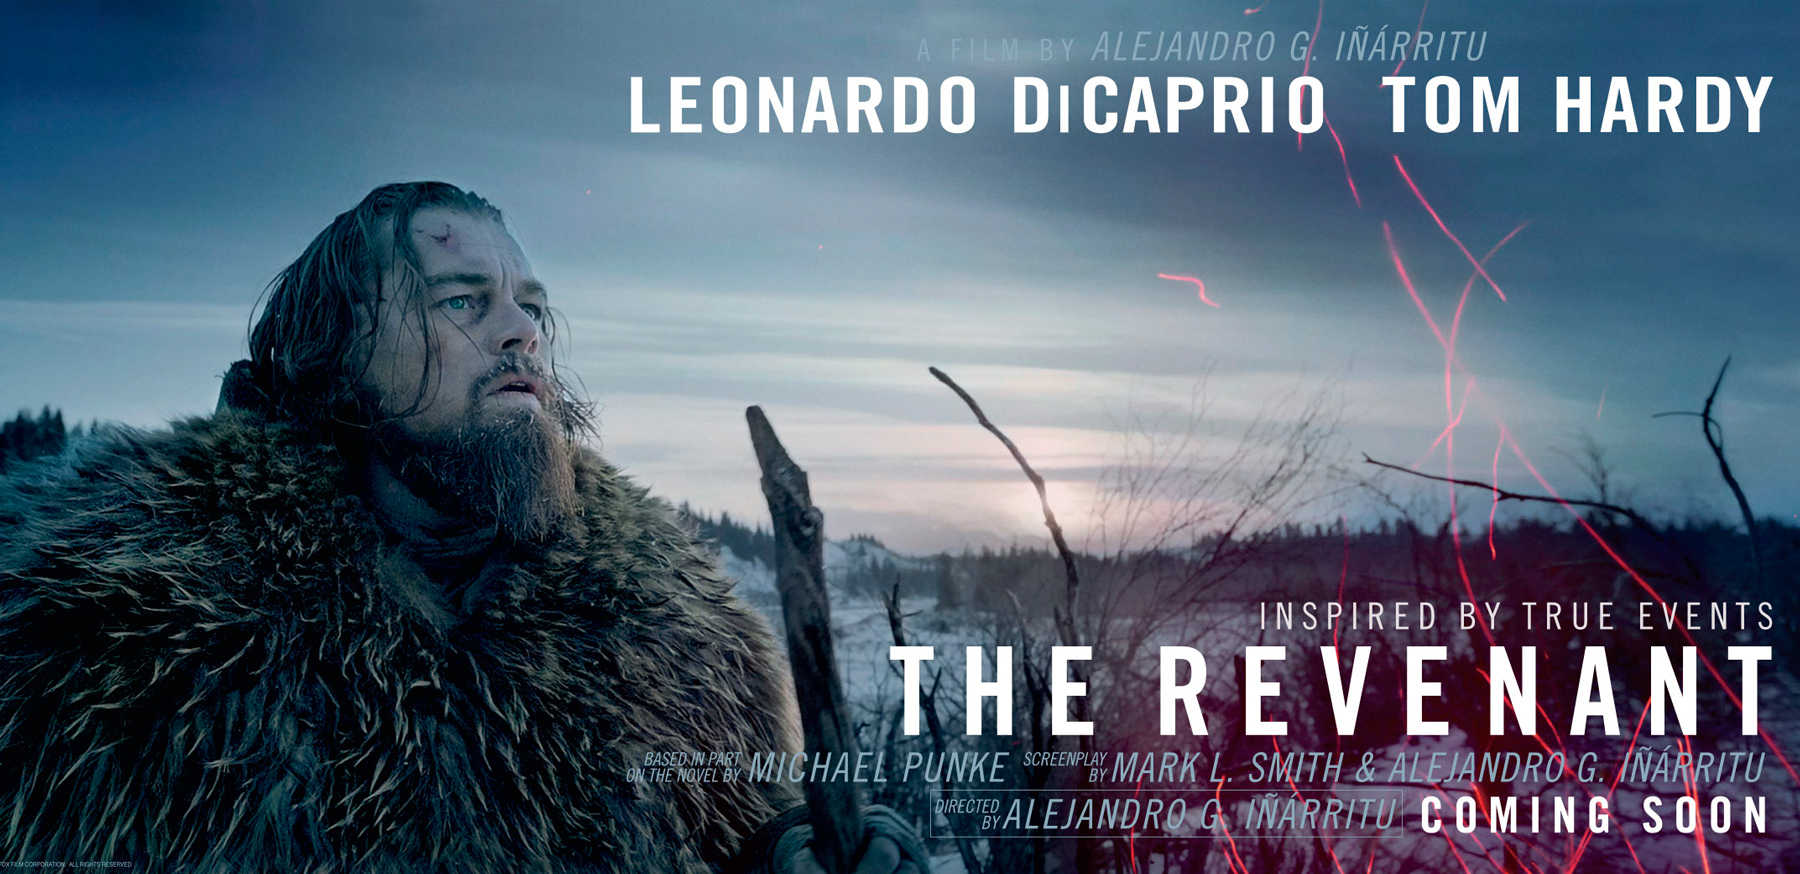 the revenant full movie online 2015